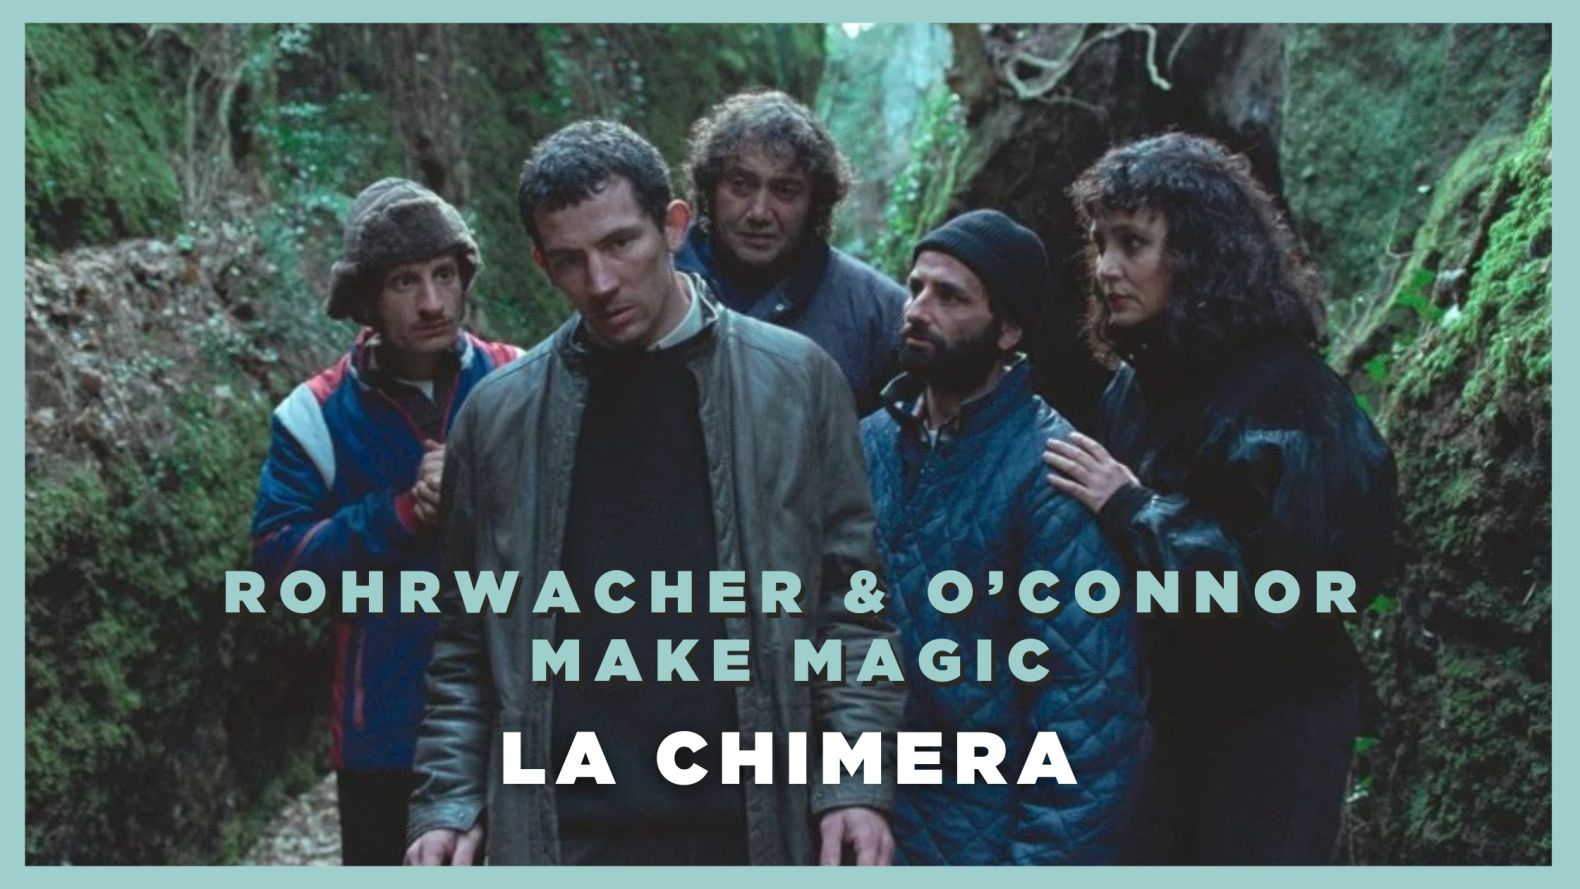 La Chimera – Rohrwacher and O’Connor Make Magic